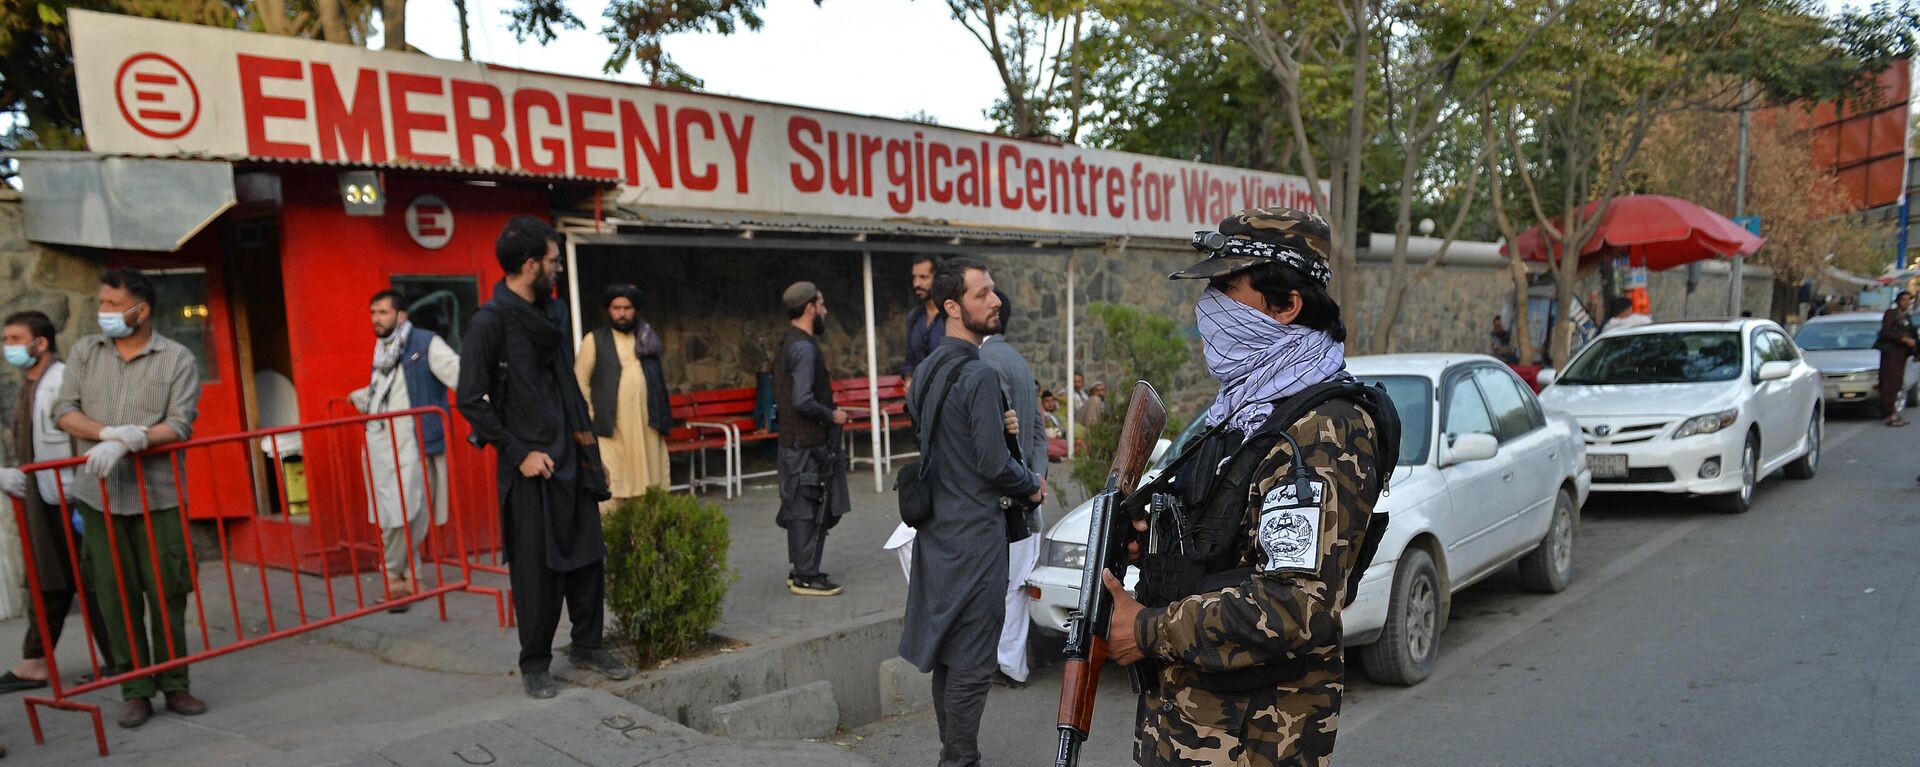 Припадници покрета Талибан и медицинско особље испред улаза у болницу чекају долазак жртава након експлозије у џамији у Кабулу - Sputnik Србија, 1920, 03.10.2021